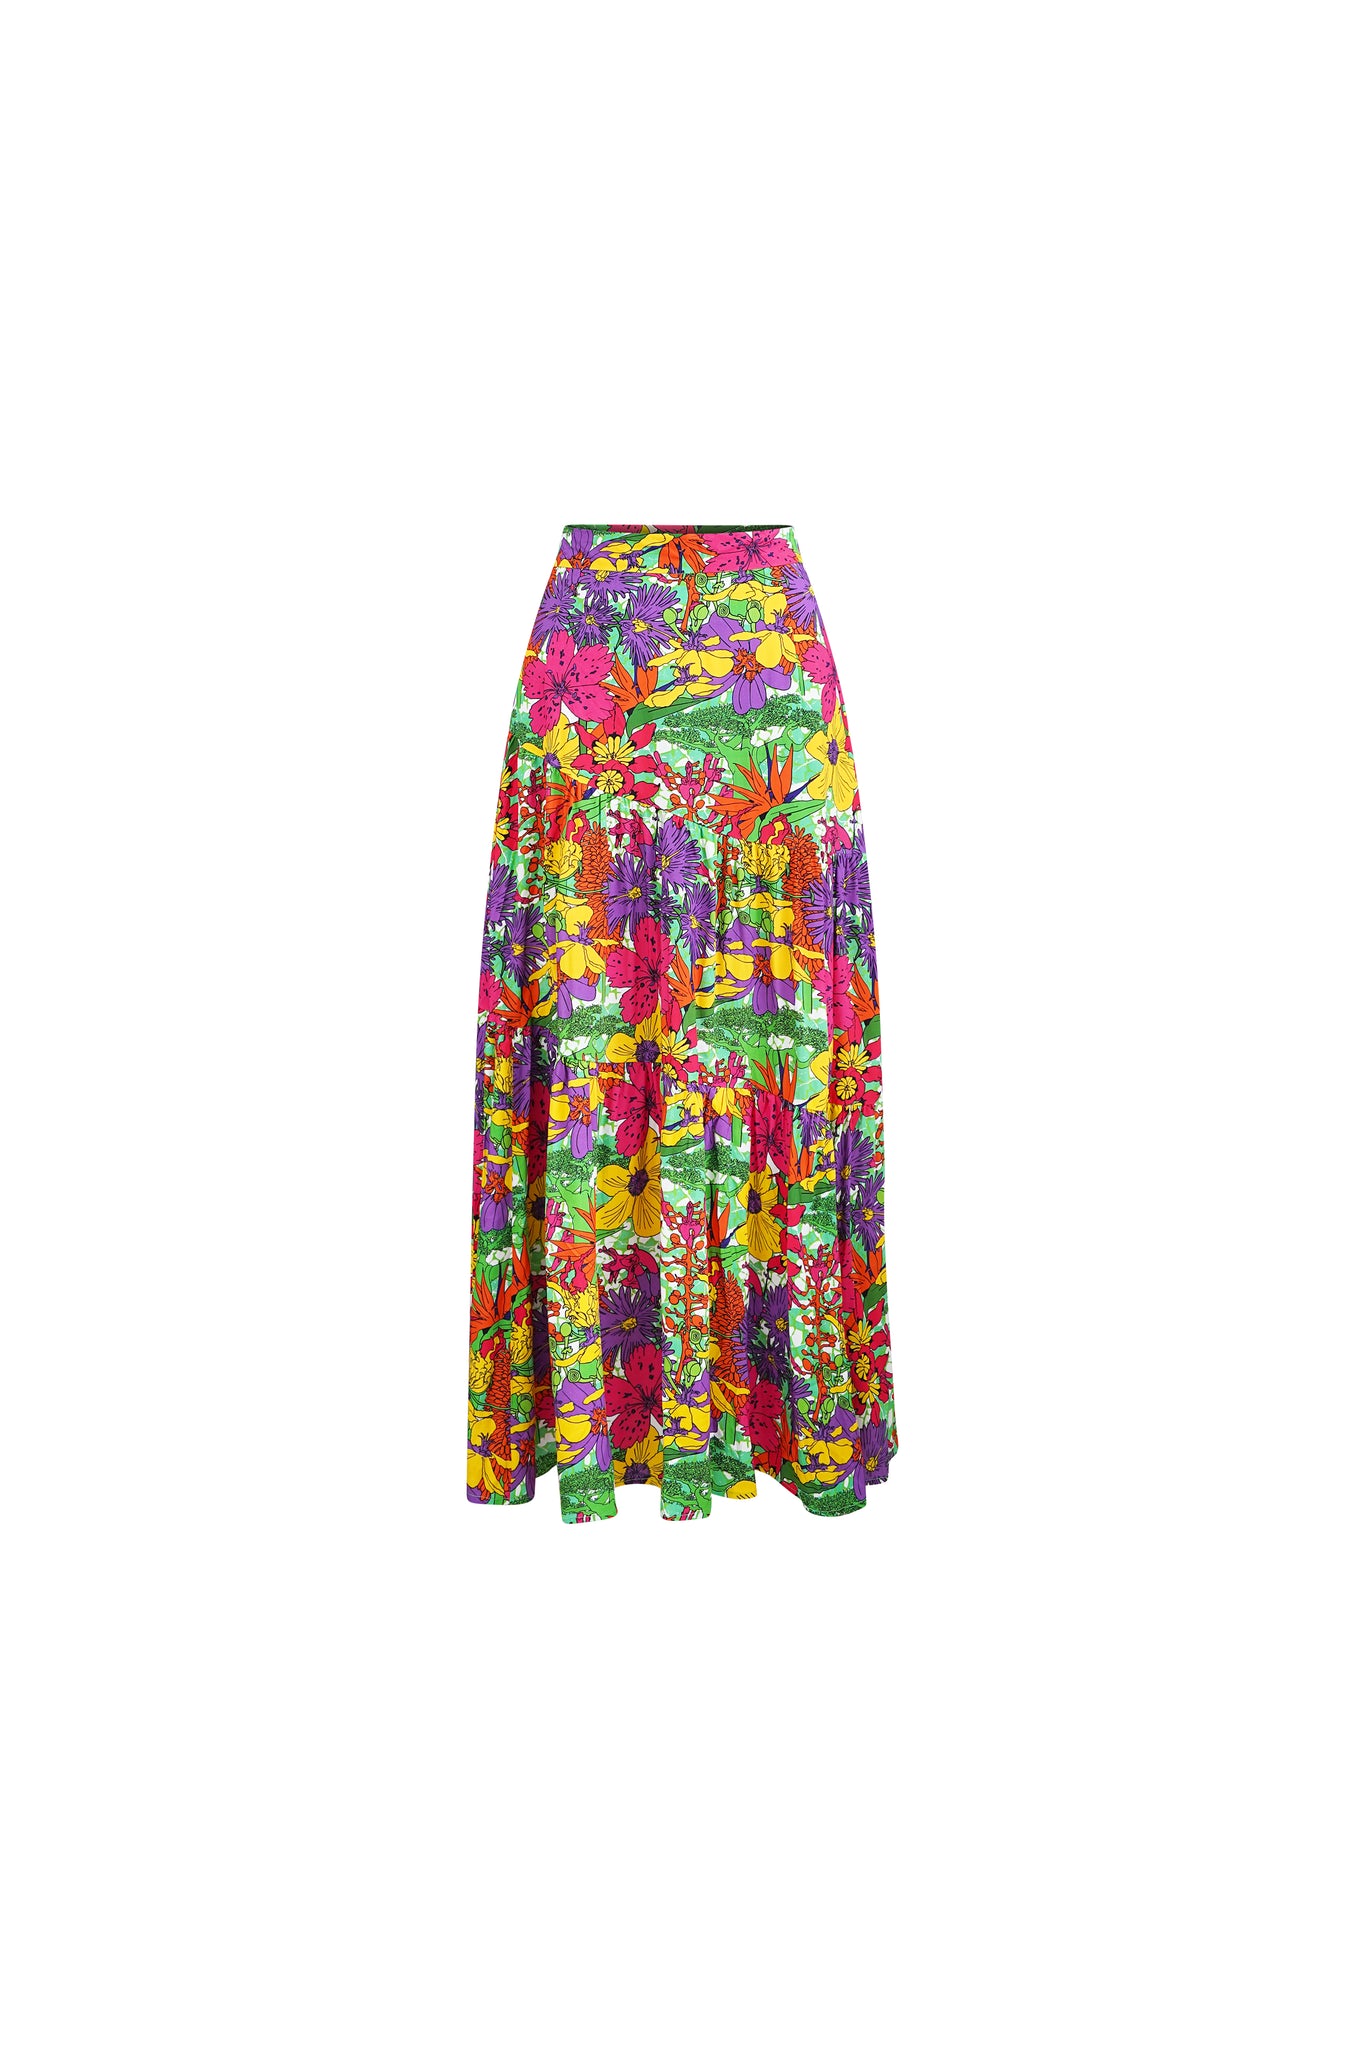 Zikora High Waist Flare Maxi Skirt - Green Pink Yellow Garden Mosaic Print | ILC OA OG